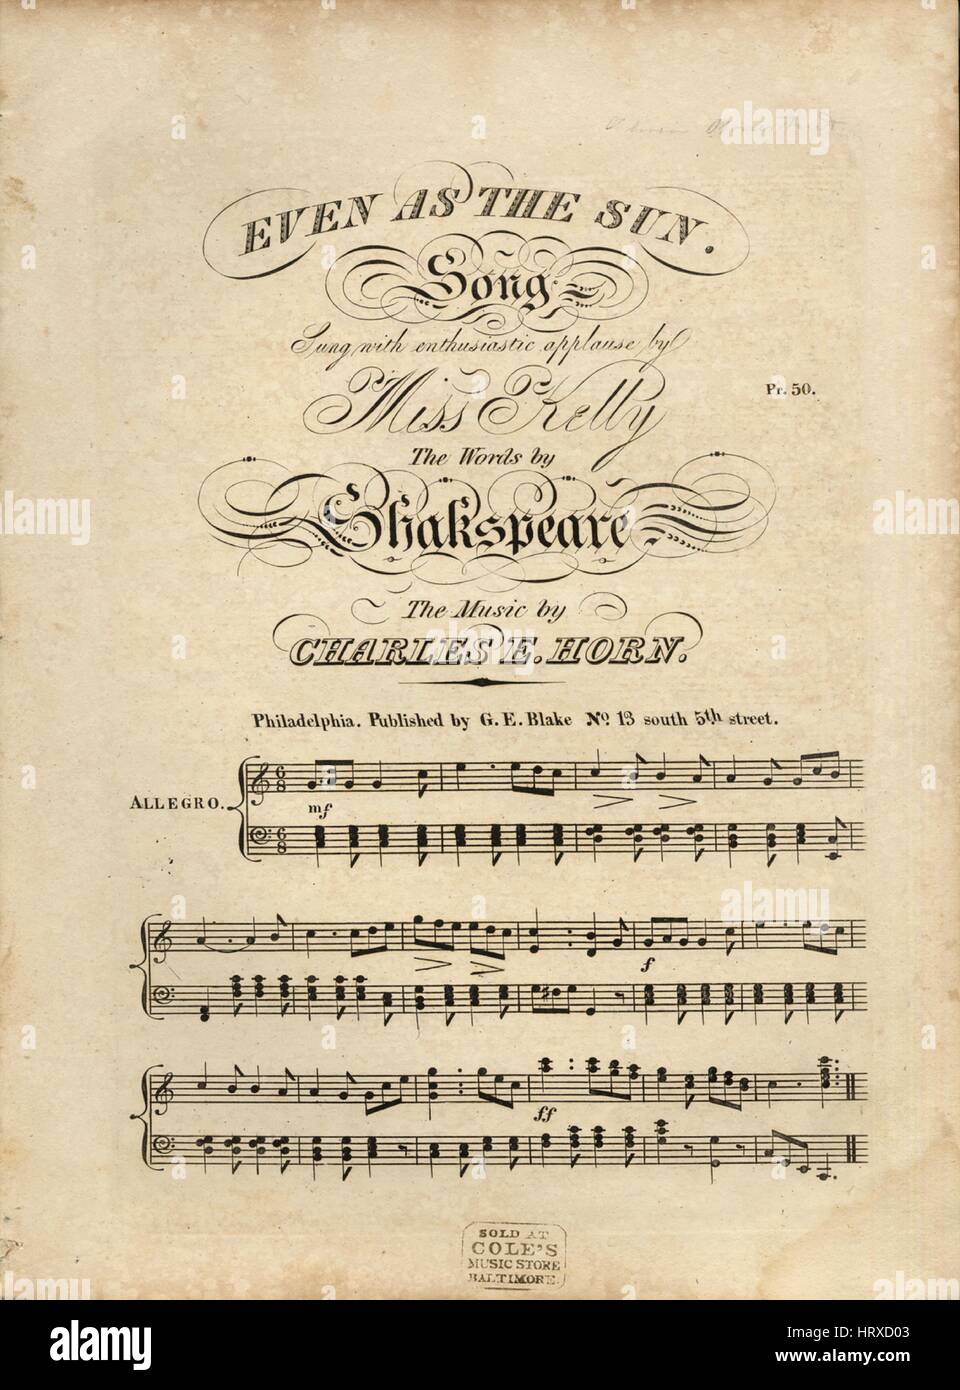 Imagen de cubierta de partituras de la canción "incluso como el sol", con  canciones de la autoría original notas leyendo 'las palabras [por William  Shakespeare] La música de Charles E BOCINA", Estados